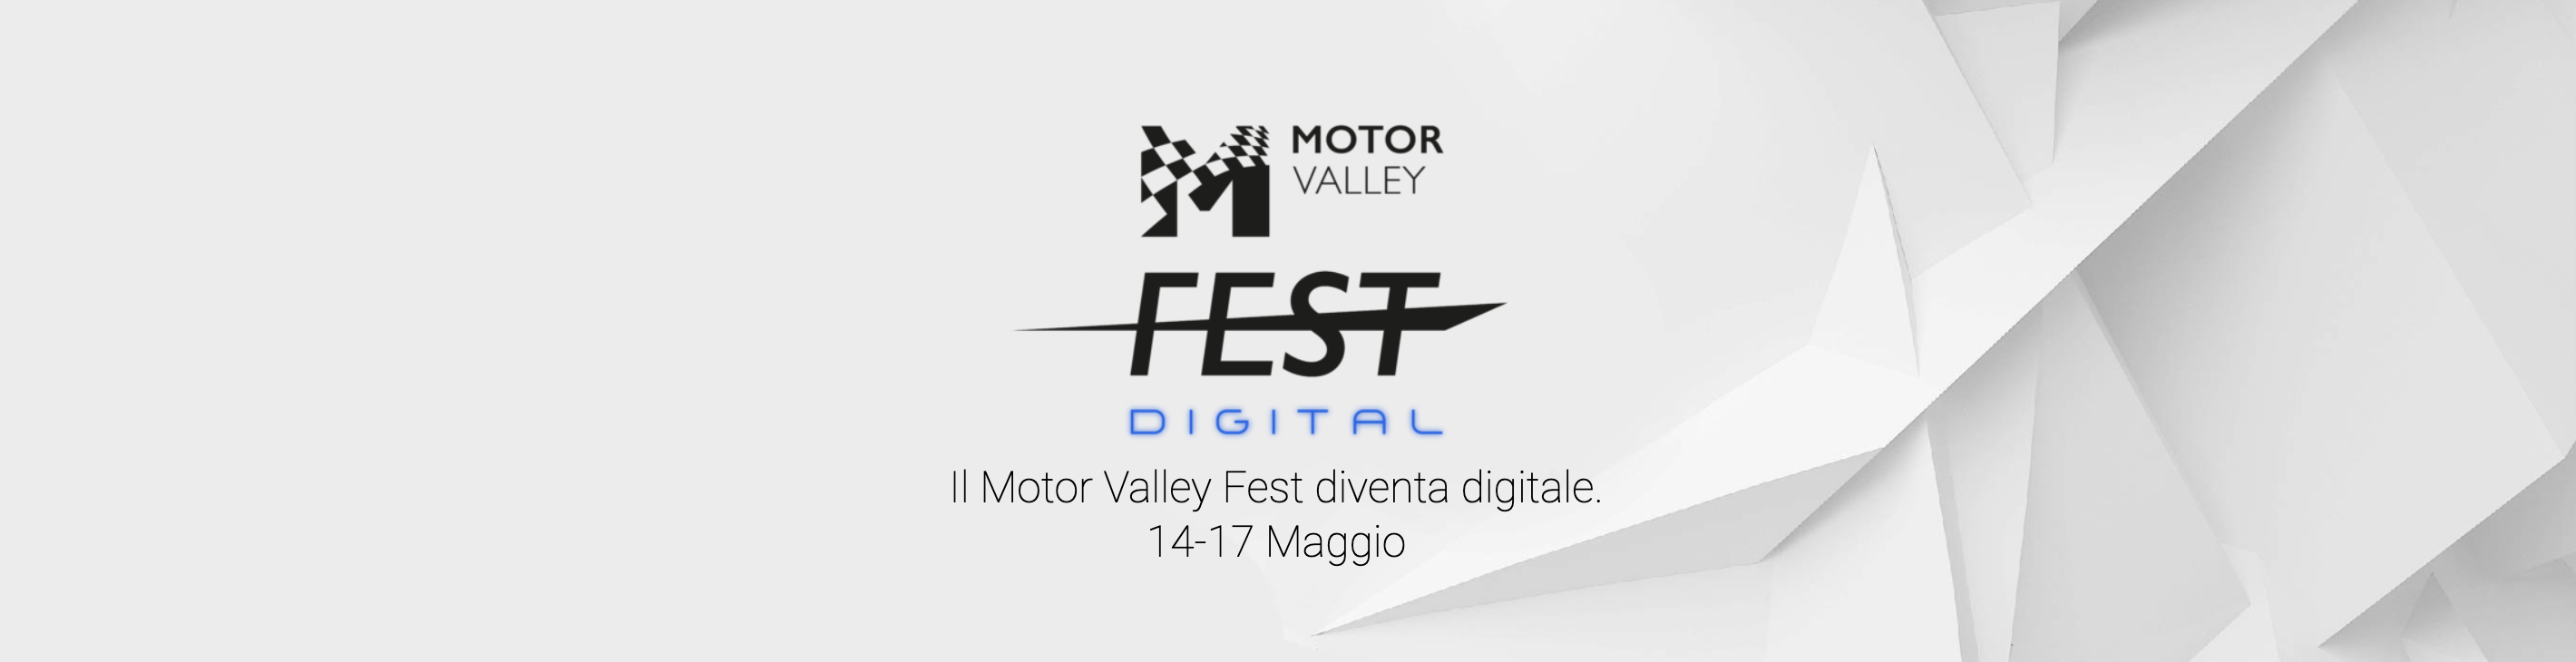 Motor Valley Fest Digital: 6 eventi da non perdere